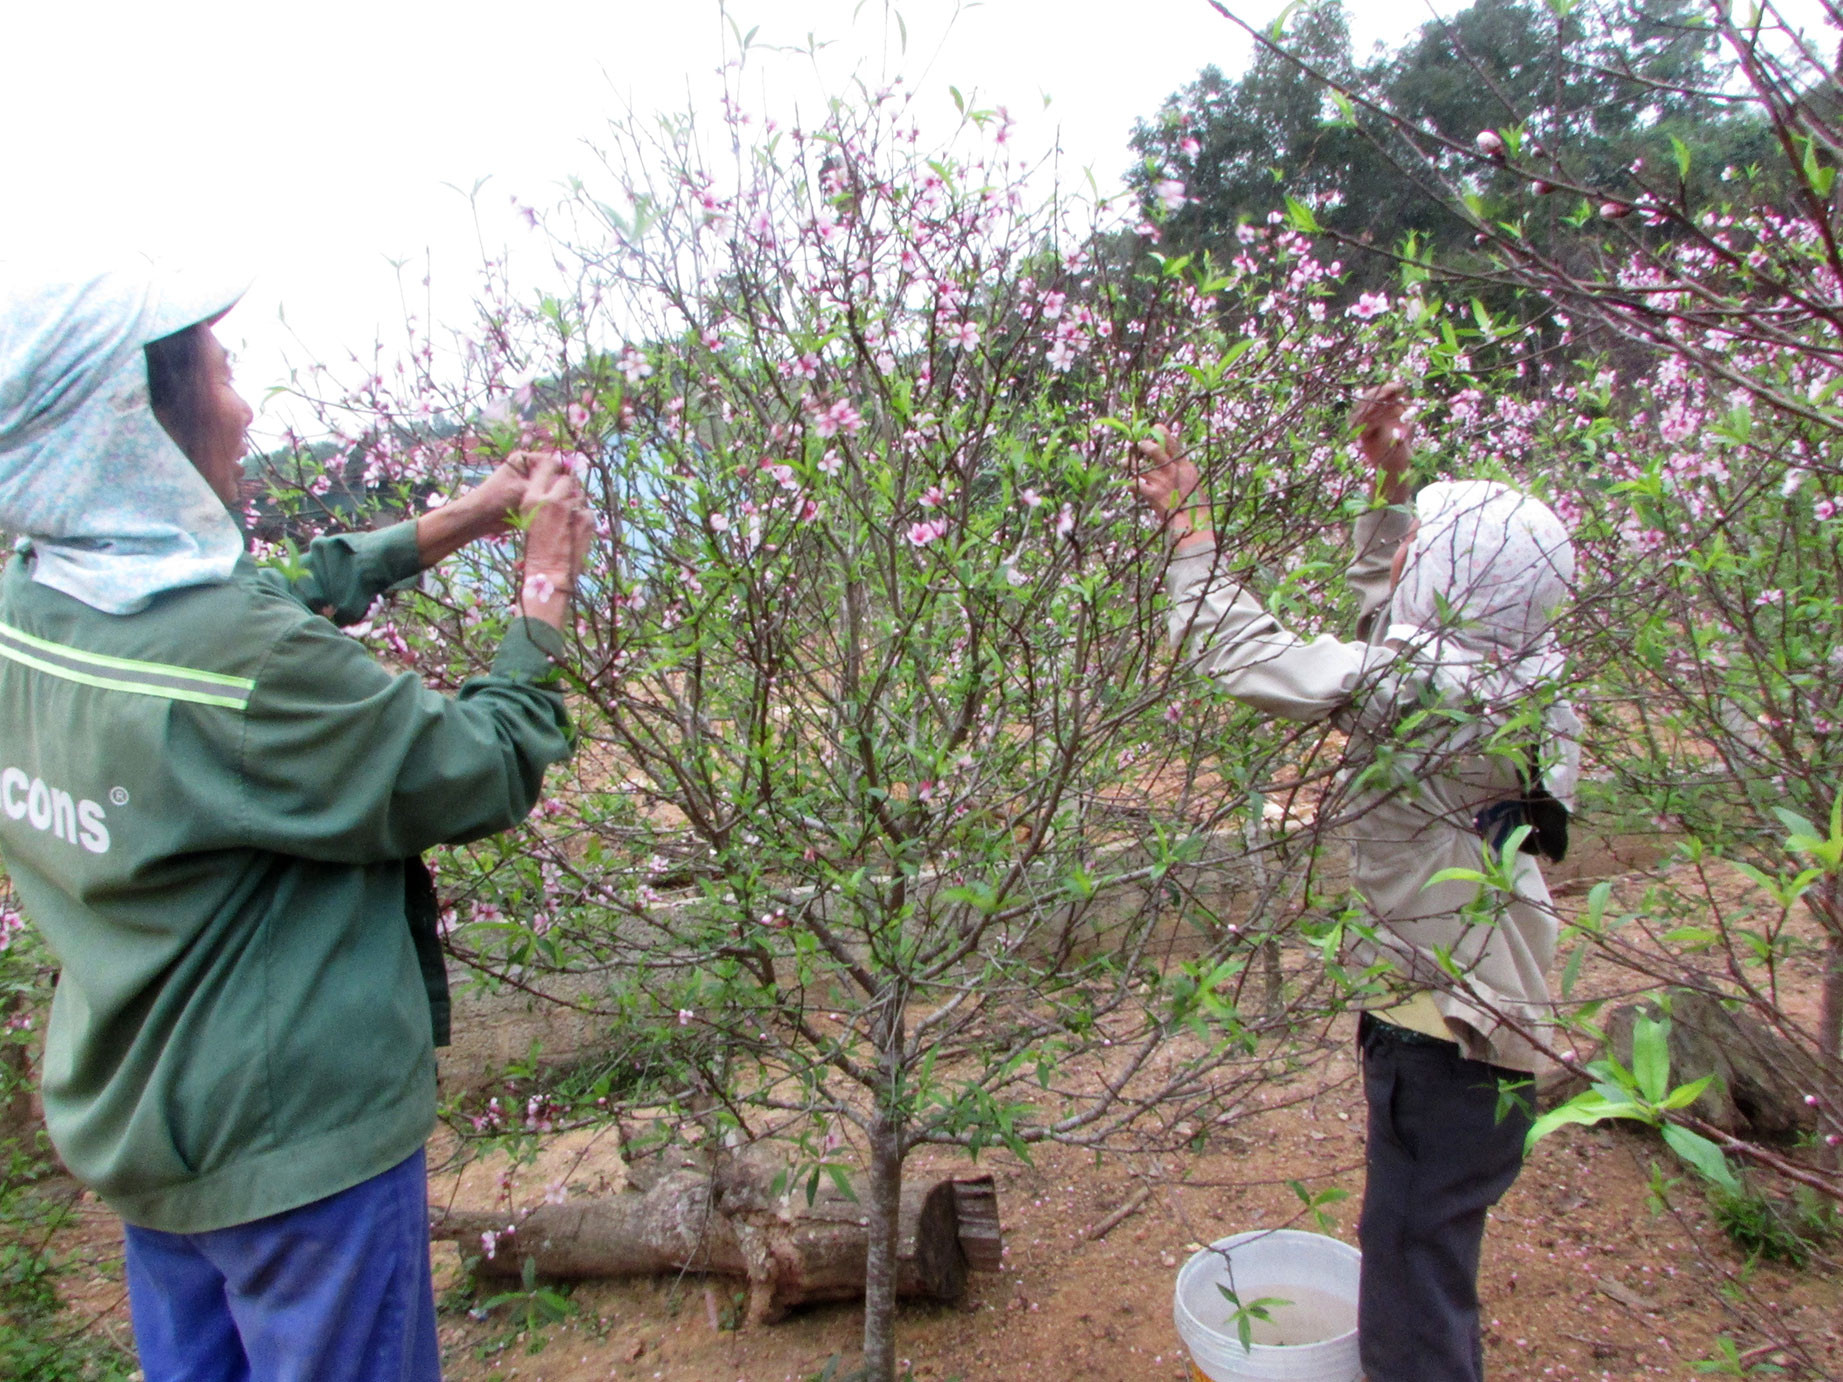  Những ngày đầu xuân, nông dân Kim Thành  tập trung cắt tỉa, chăm sóc cây đào để có thêm  nguồn thu nhập cho những Tết năm sau. Ảnh: Thái Hồng 